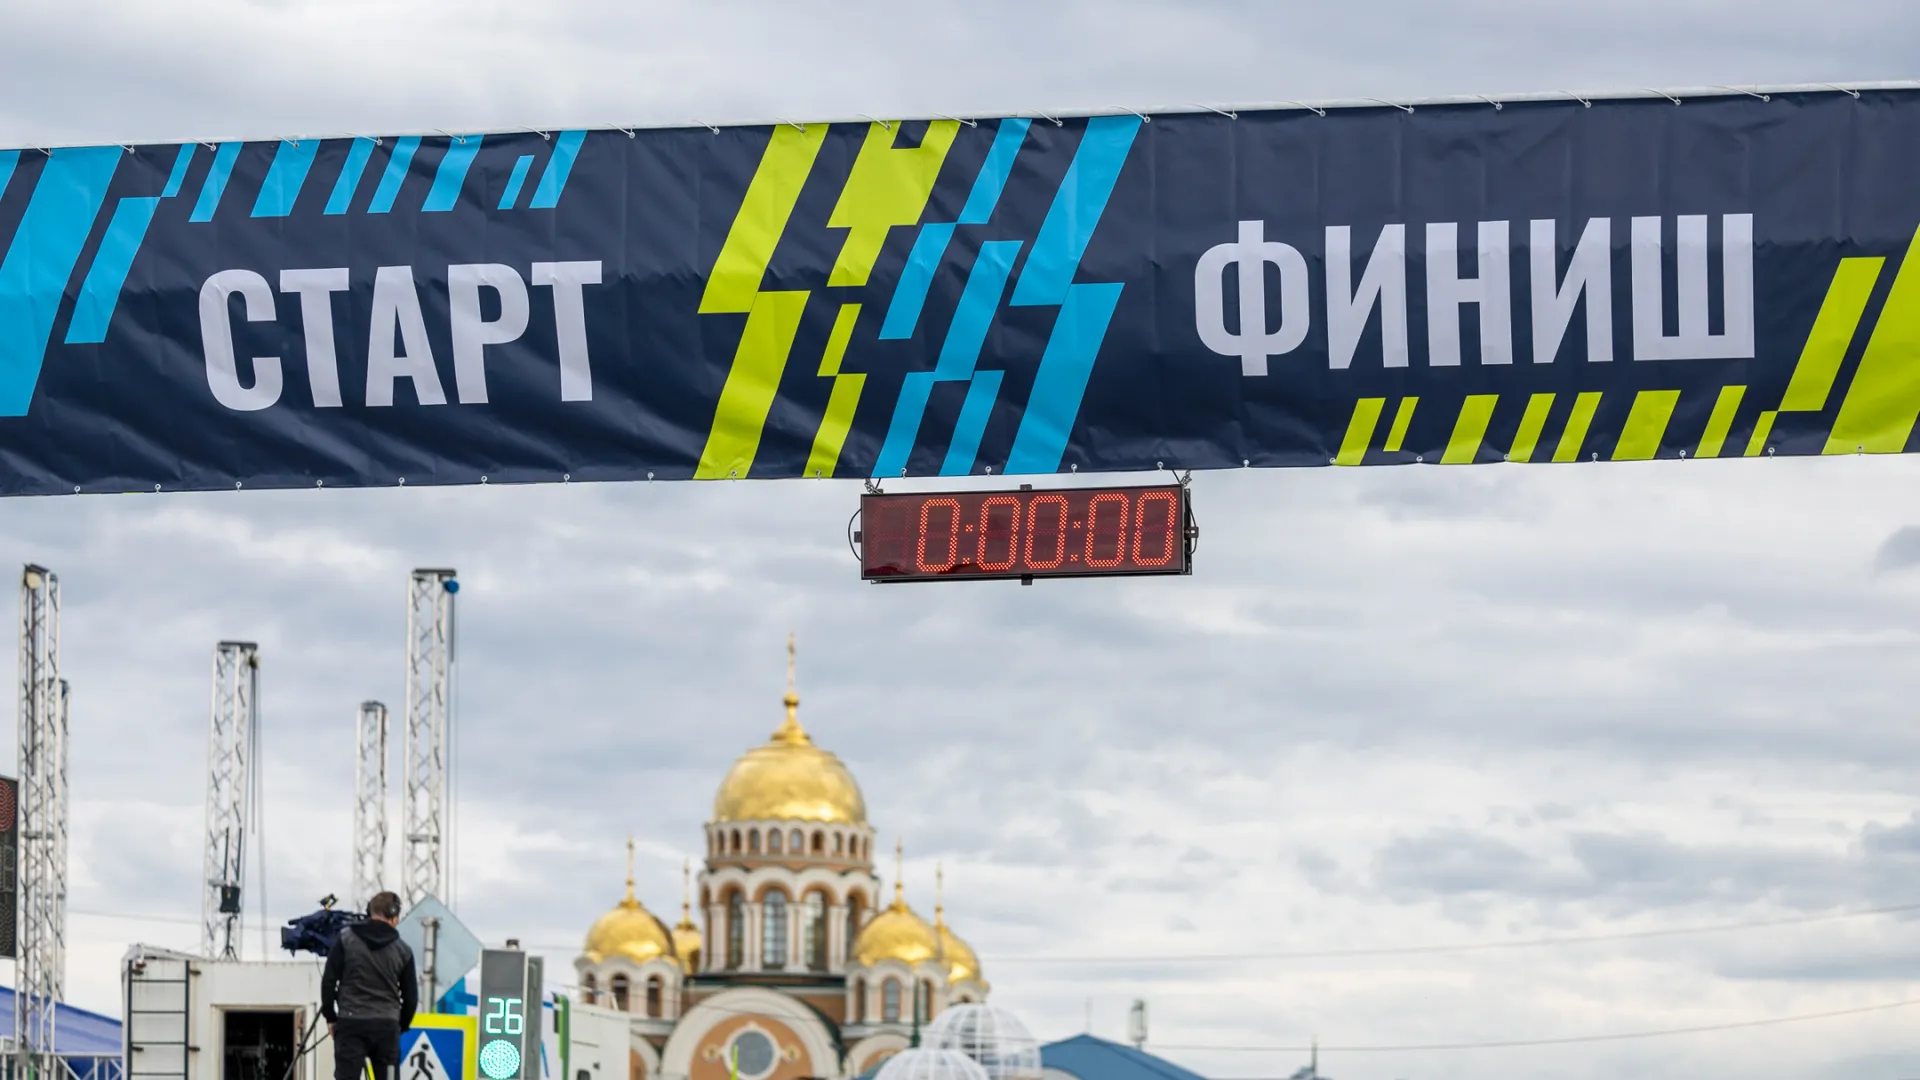 Забег стартует 15 июня в Салехарде. Фото: Фёдор Воронов / АНО «Ямал-Медиа»